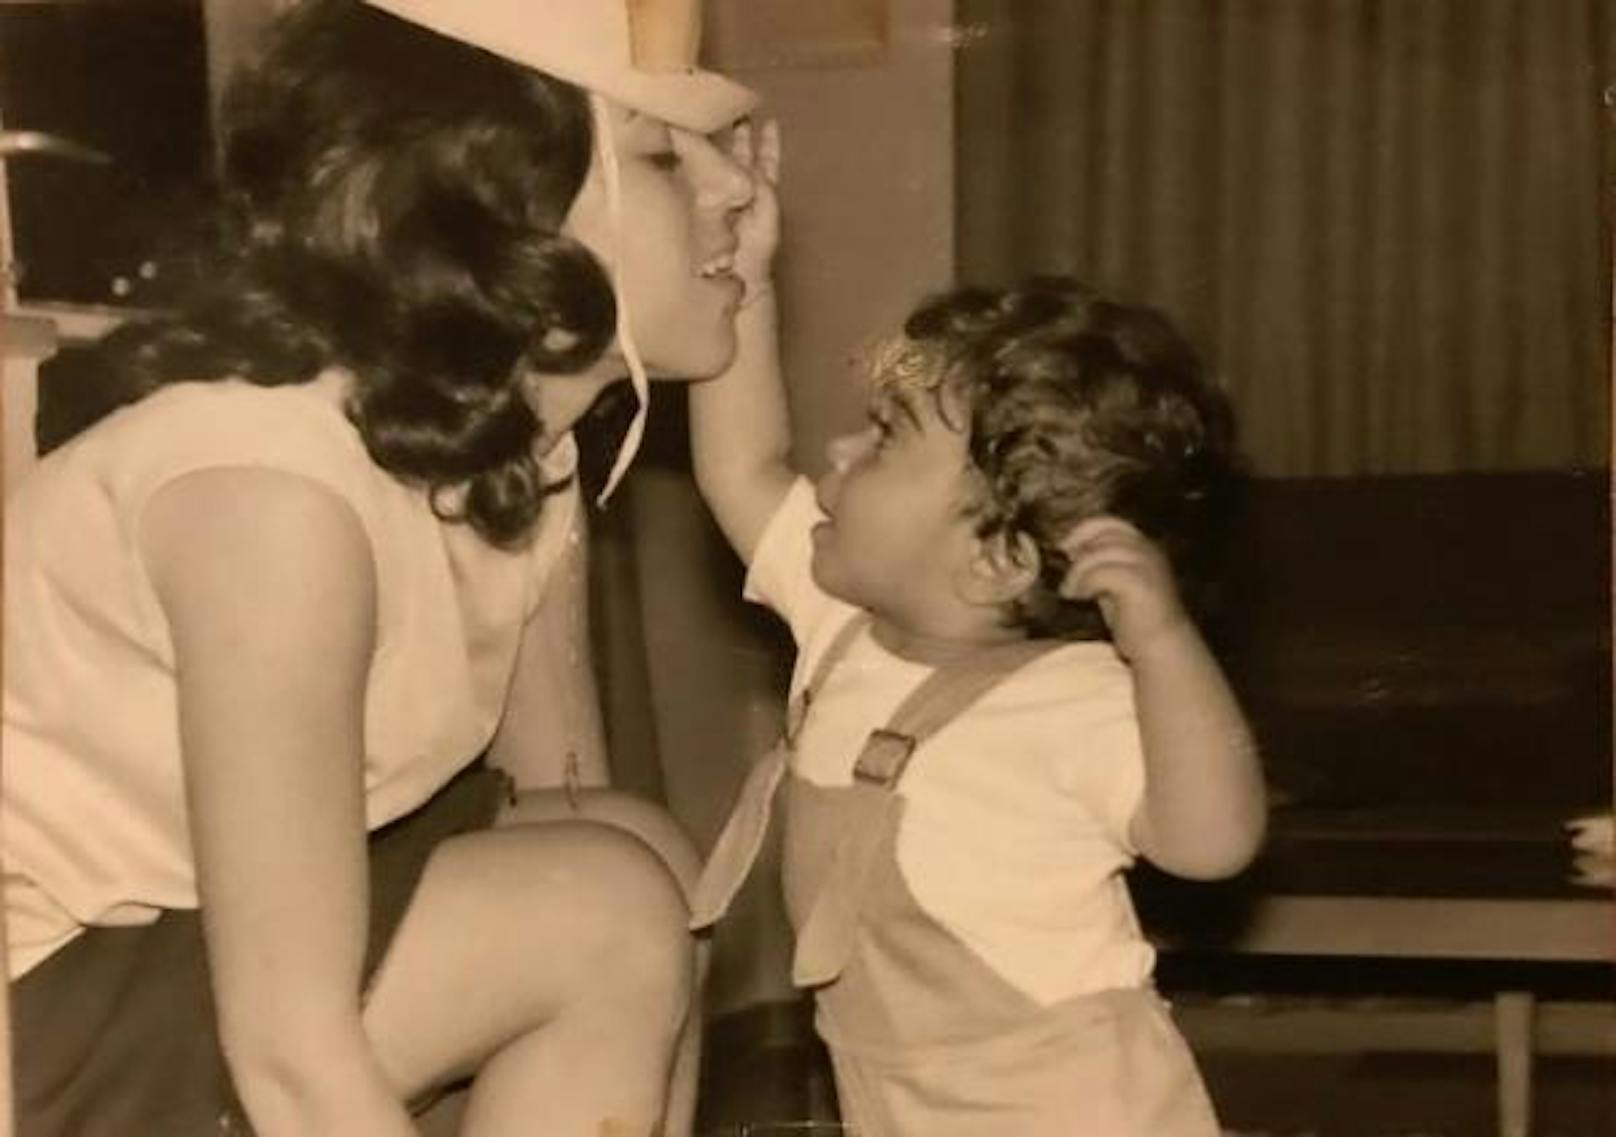 Erken und seine Mutter im Jahr 1970 in Ankara.